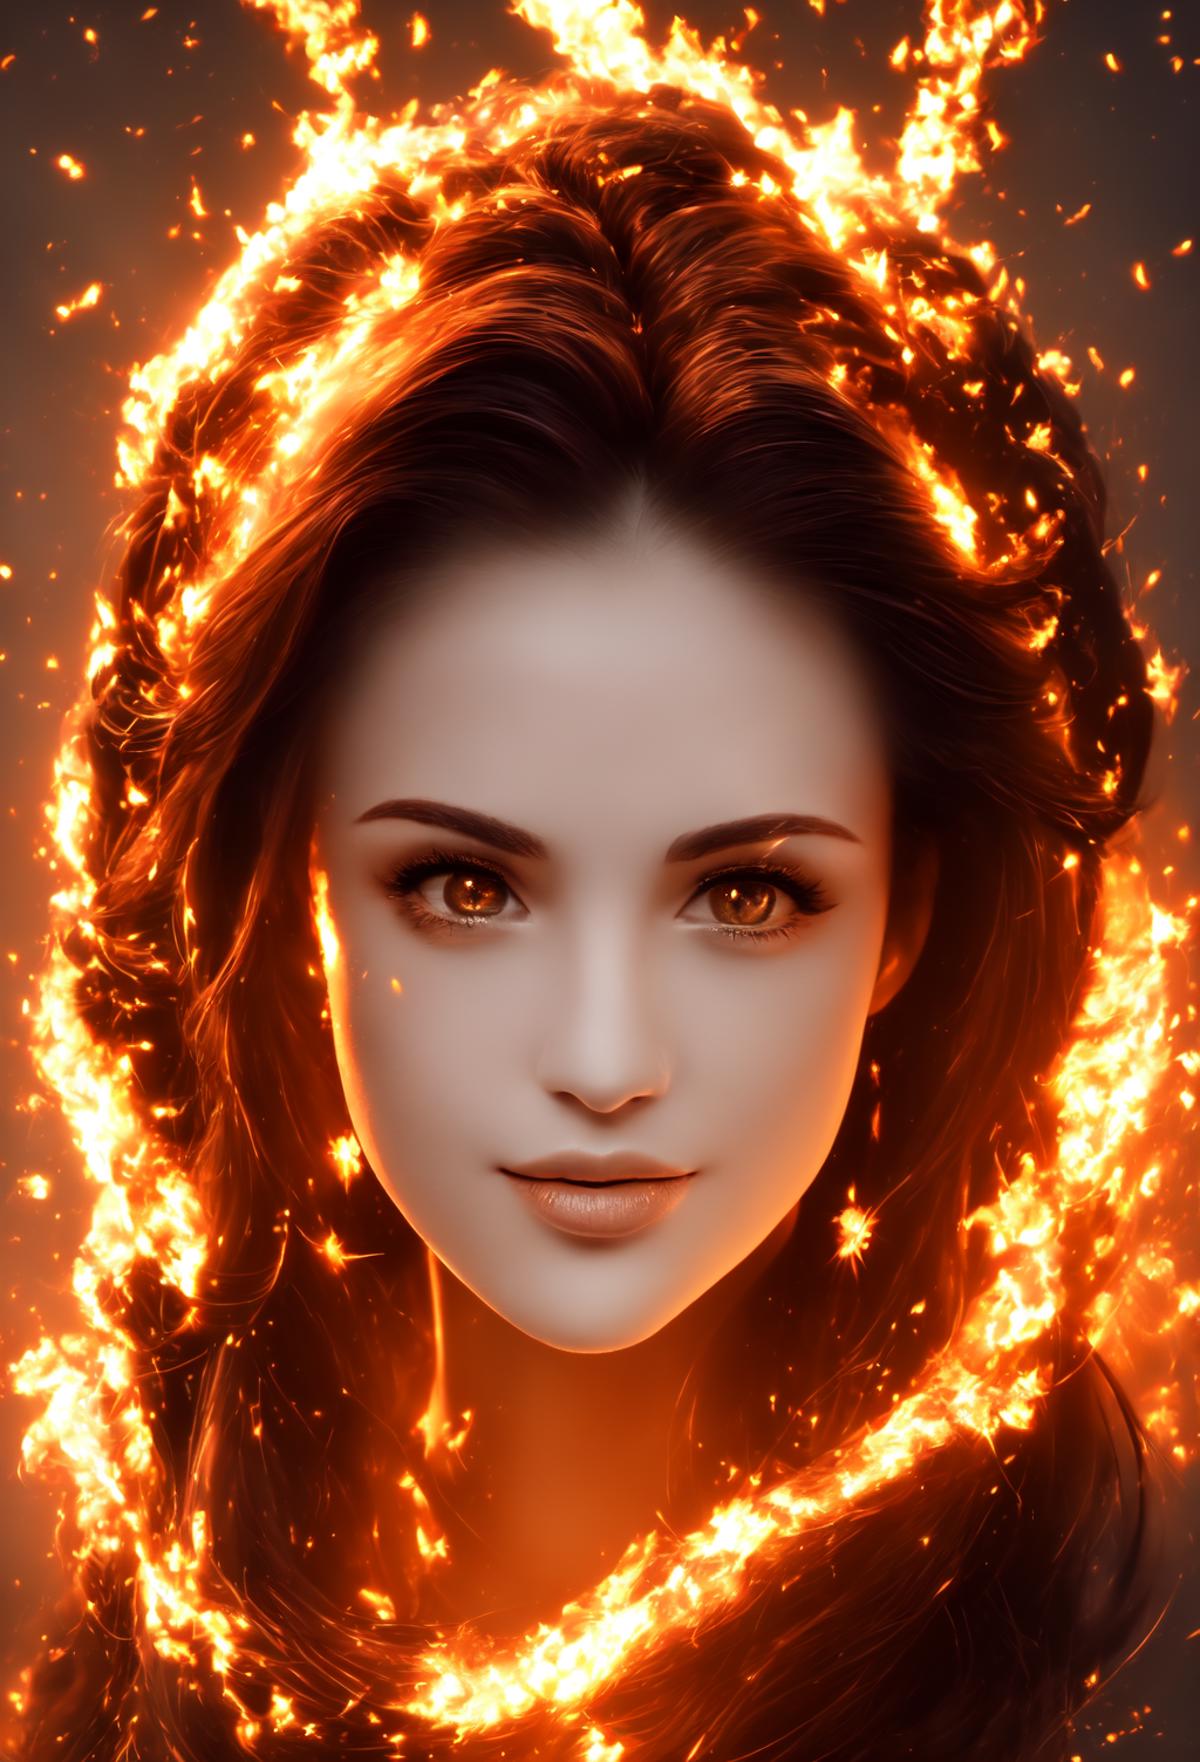 Fire portrait lora image by Trex